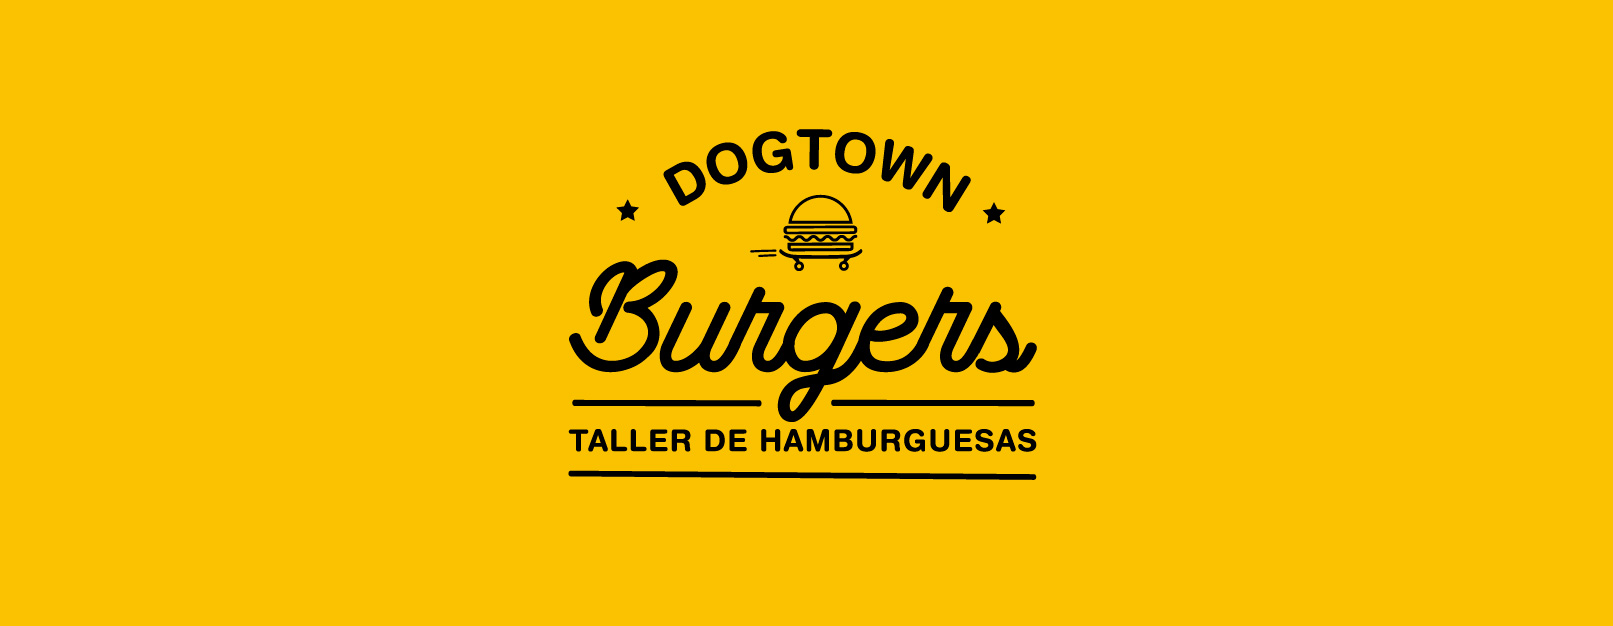 Dogtown Burger